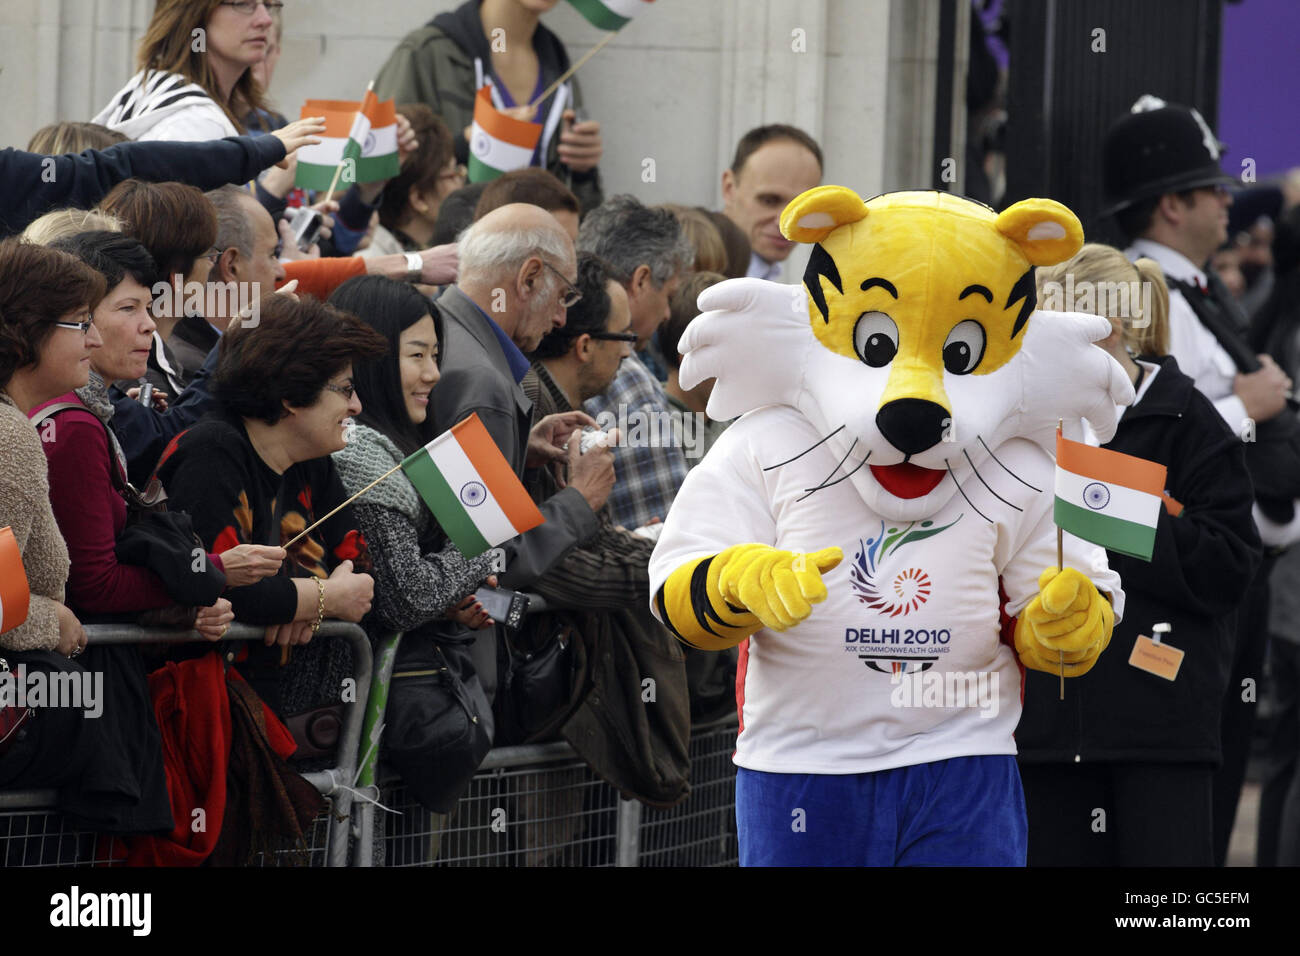 Shera la mascotte sventola una bandiera durante il lancio del XIX Baton Relay della Regina dei Giochi del Commonwealth di Delhi 2010. Il lancio ha coinciso con la visita di Stato in Gran Bretagna del presidente indiano Pratibha Patil. Foto Stock